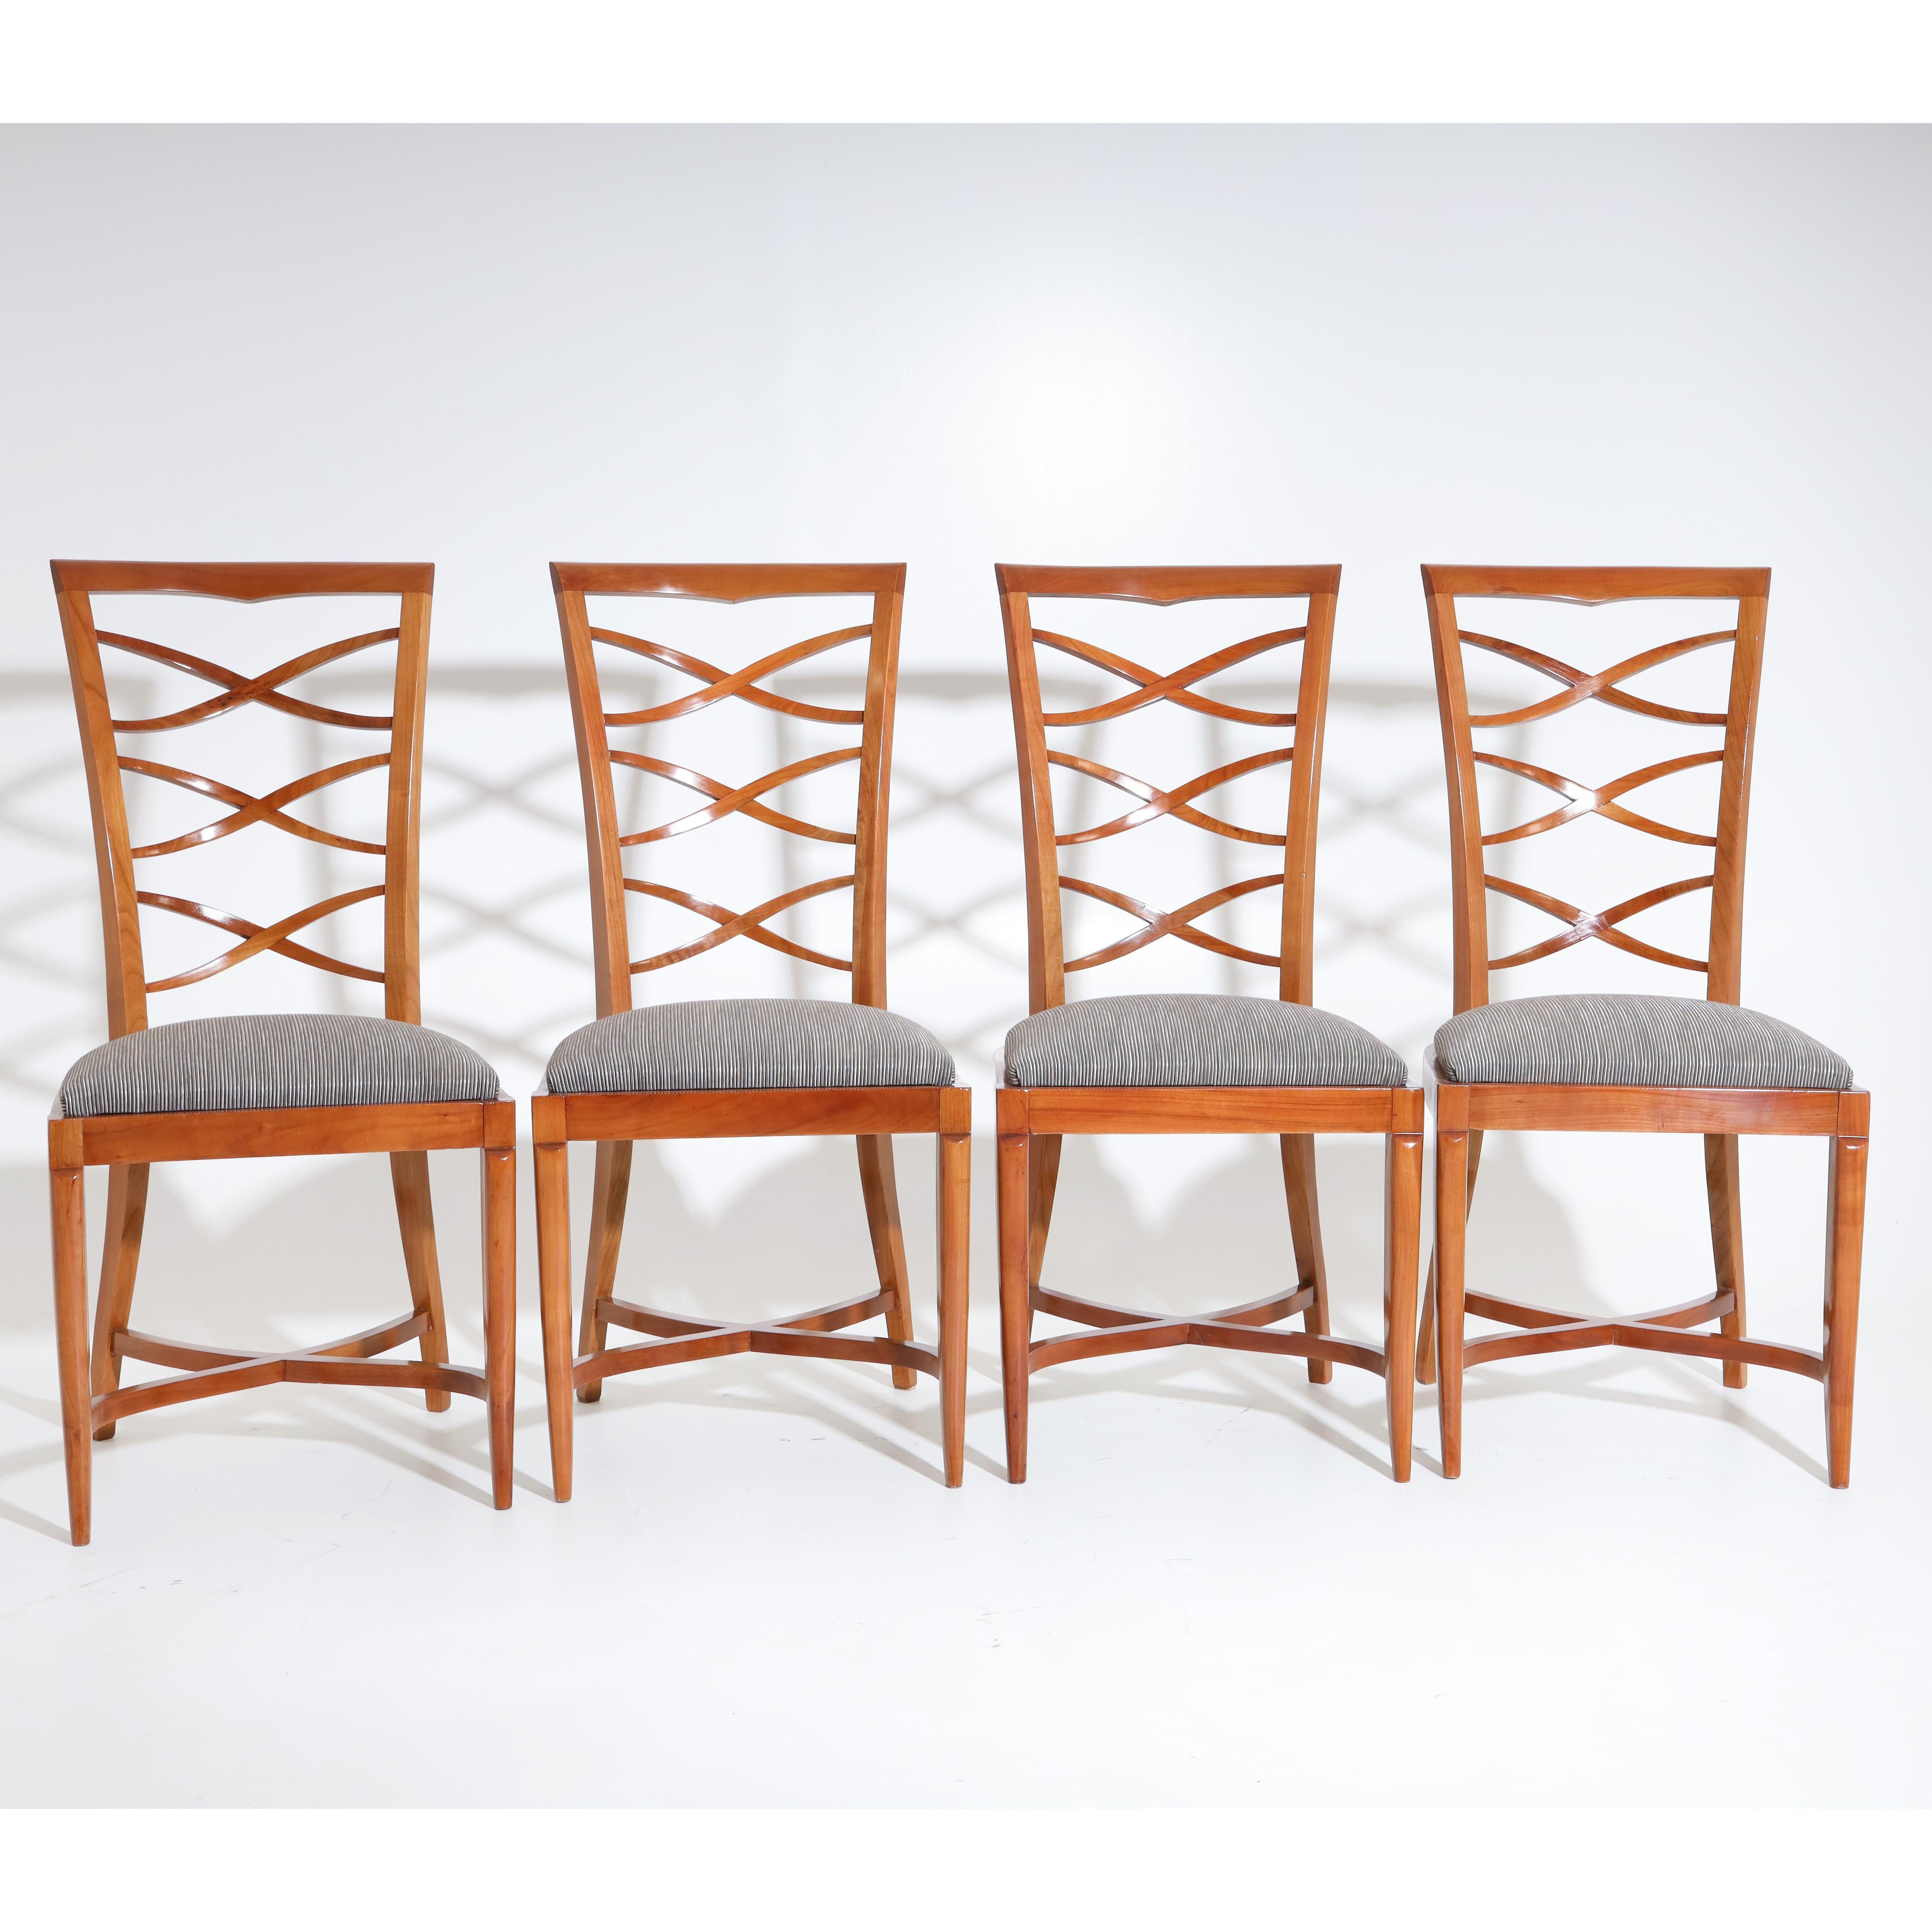 Satz von vier Art Deco Stühlen in Kirsche, mit trapezförmig durchbrochenen Rückenlehnen und gepolsterten Sitzen. Die Stühle stehen auf elegant geschwungenen Beinen mit X-förmigen Verstrebungen. Die Stühle sind neu mit einem silbergrau gestreiften